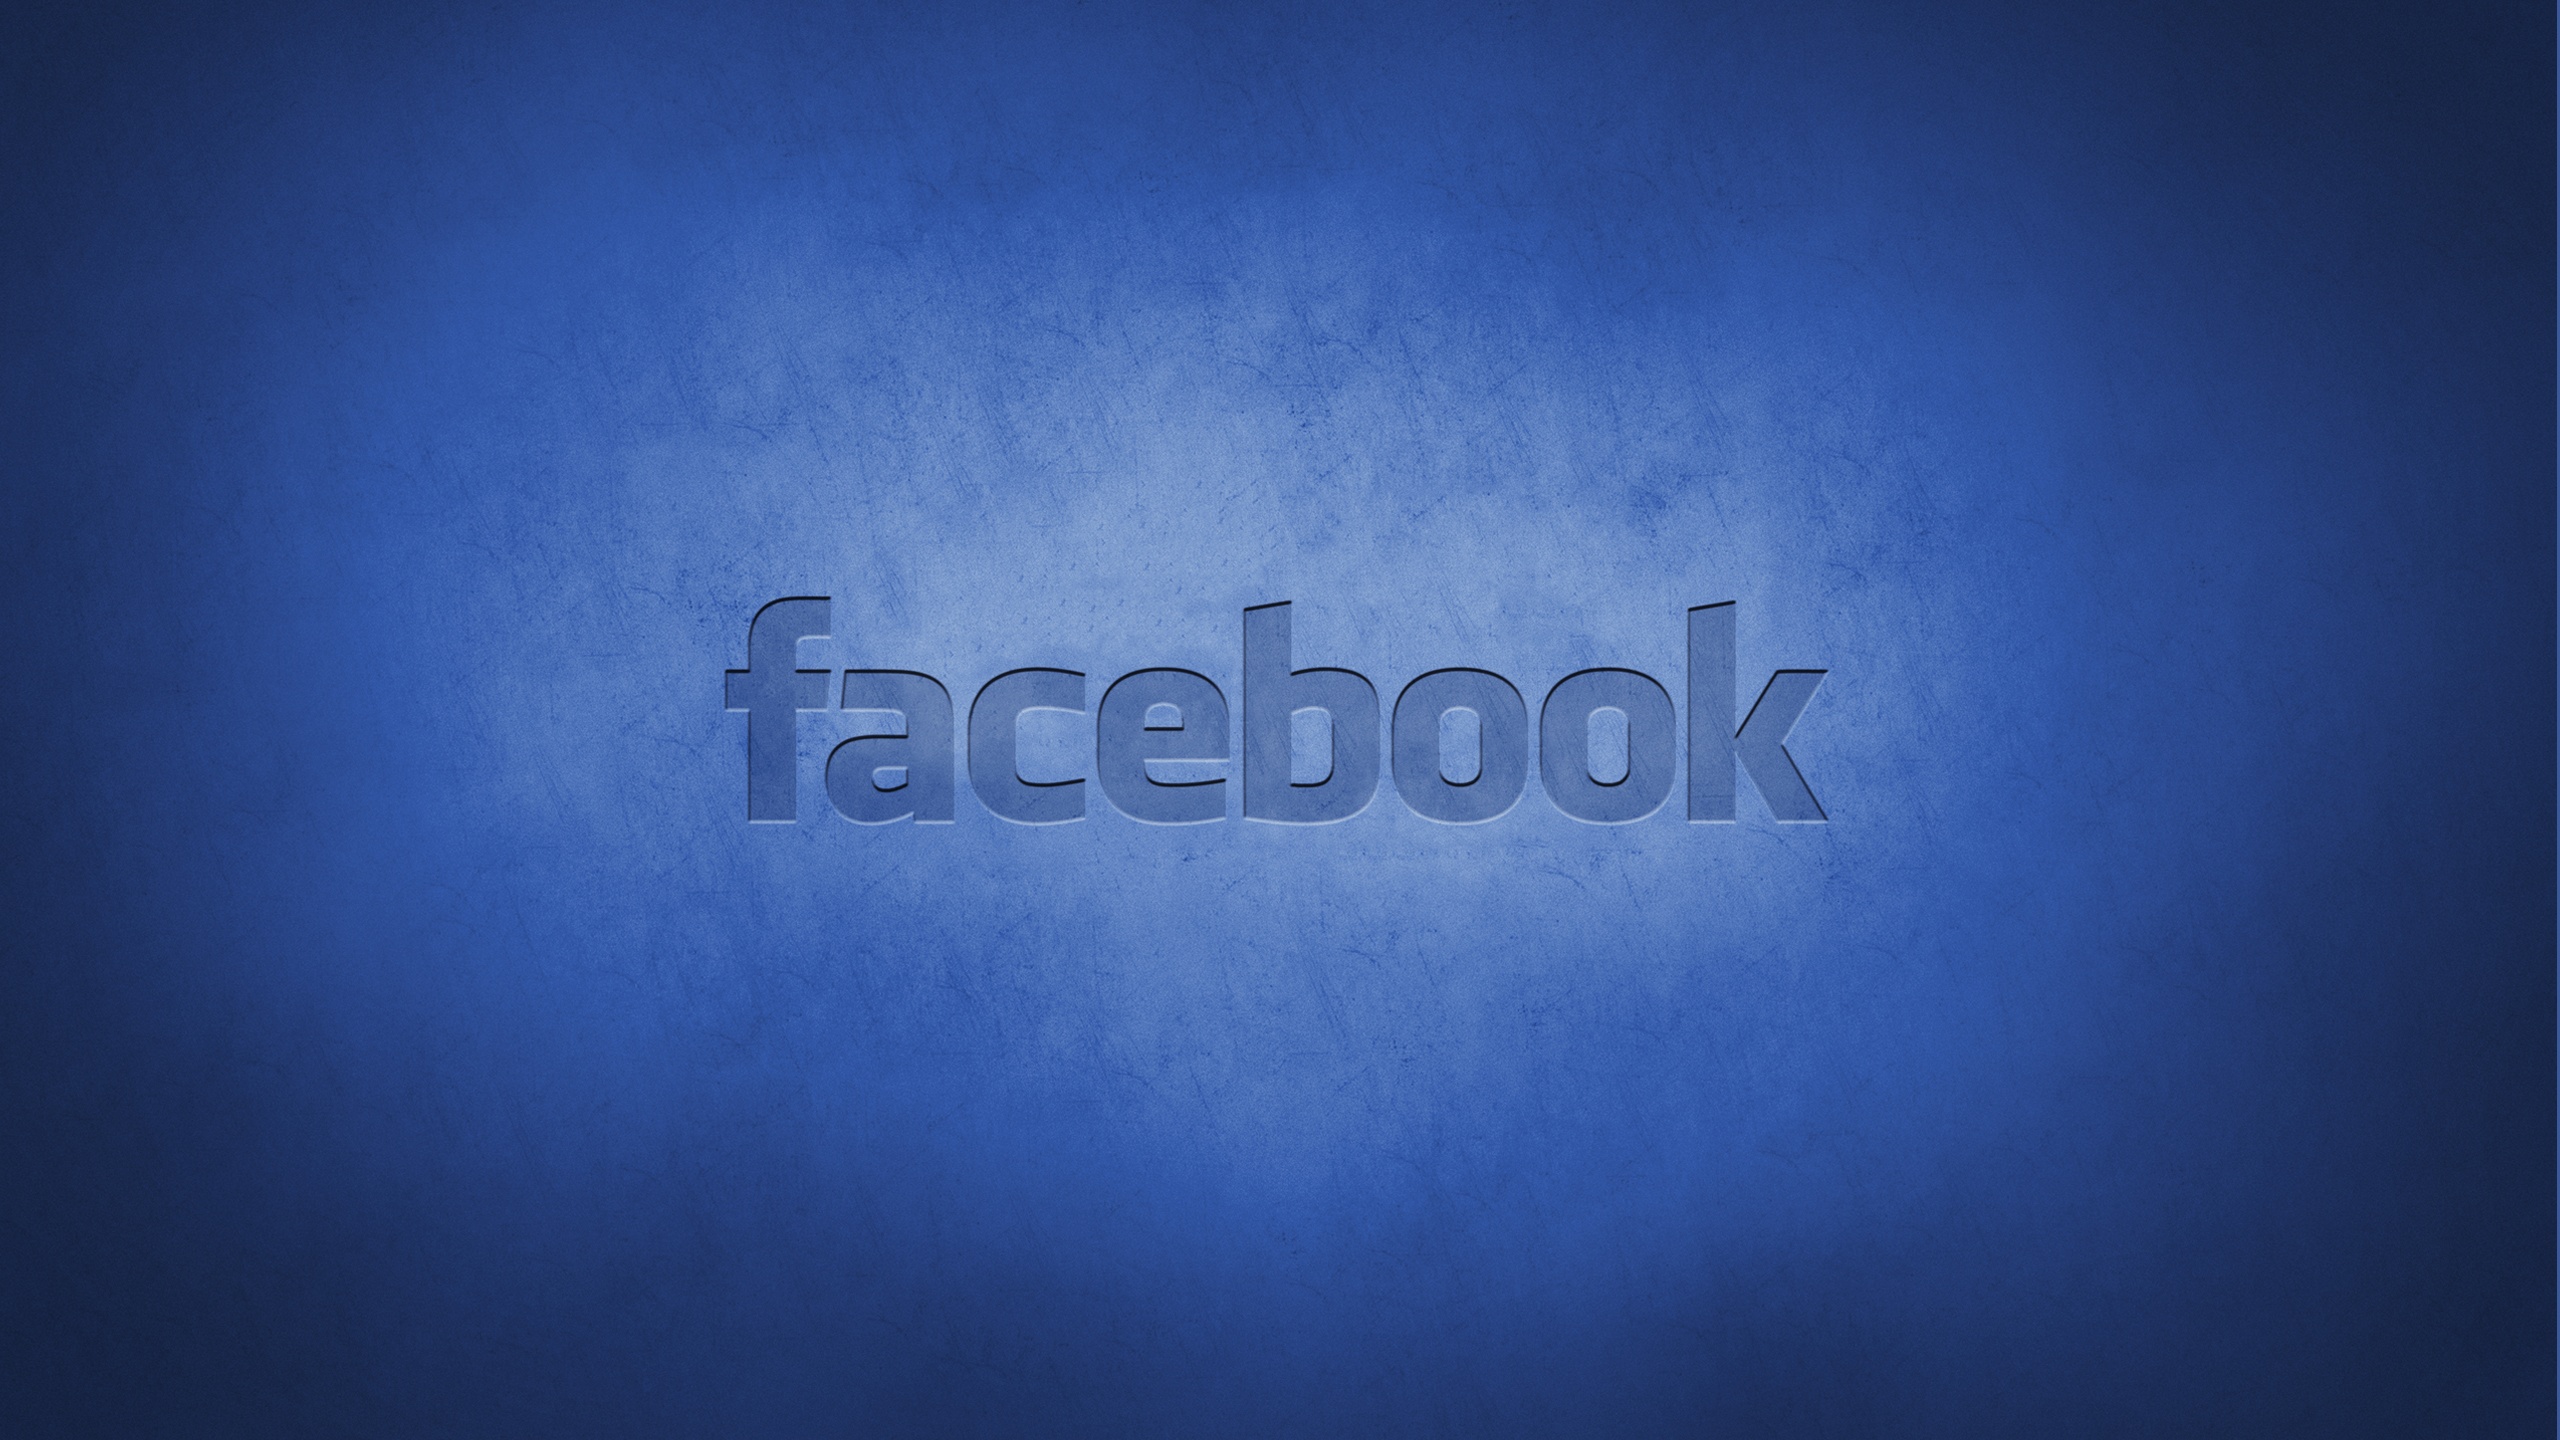 téléchargement de fond d'écran facebook,bleu,texte,ciel,police de caractère,bleu électrique